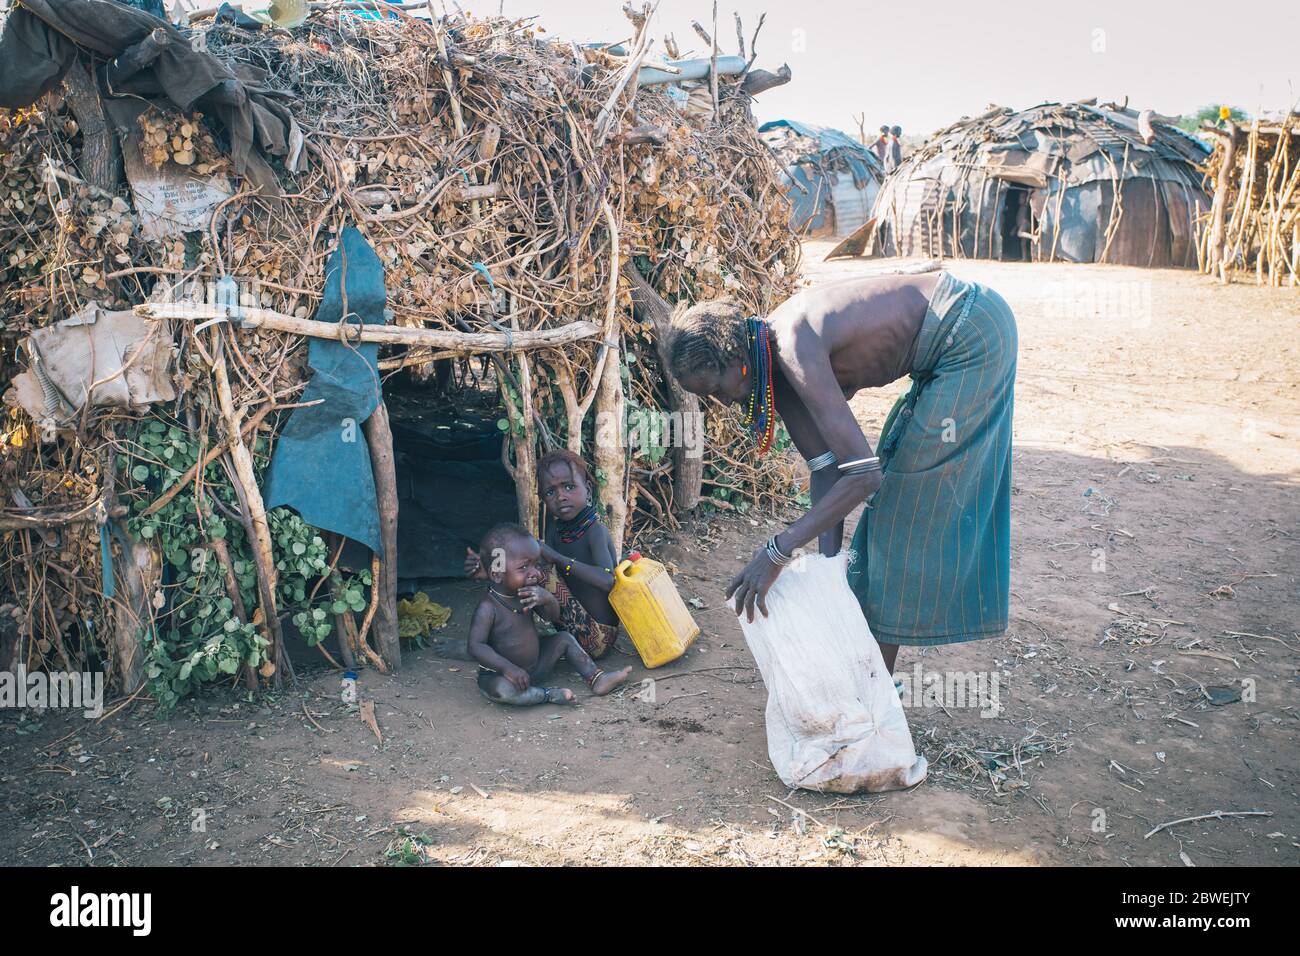 Omorate, Omo Valley, Äthiopien - 11. Mai 2019: Frau aus dem afrikanischen Stamm Dasanesh mit Kindern vor seiner Hütte. Daasanach sind cushitic ethnischen g Stockfoto